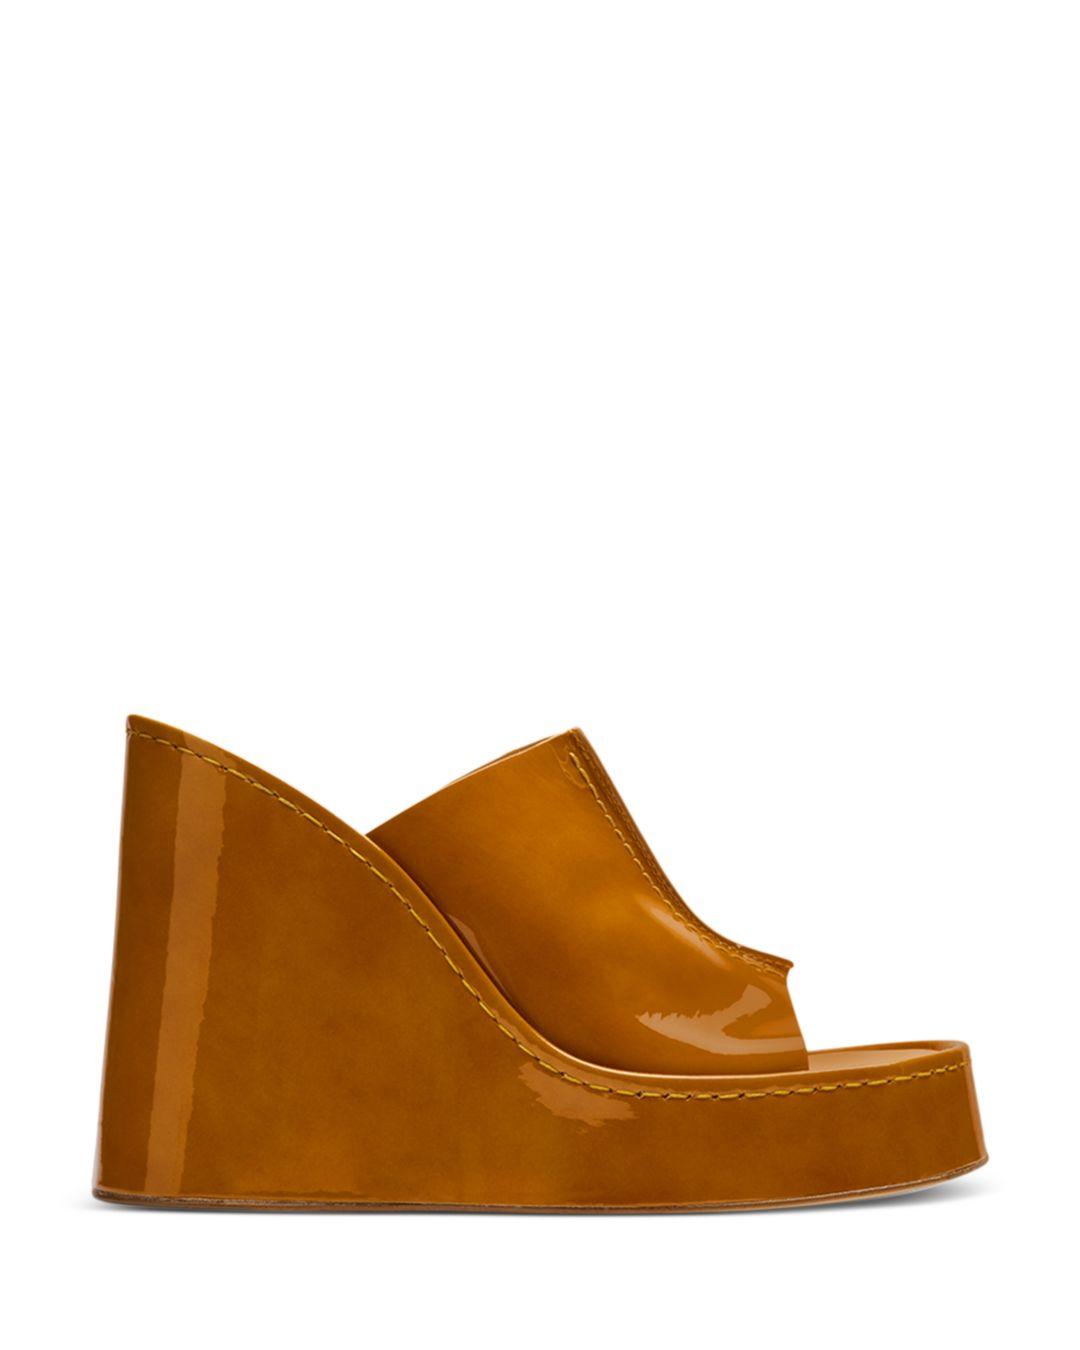 Miista Rhea Slip On Platform Mule Sandals in Brown | Lyst